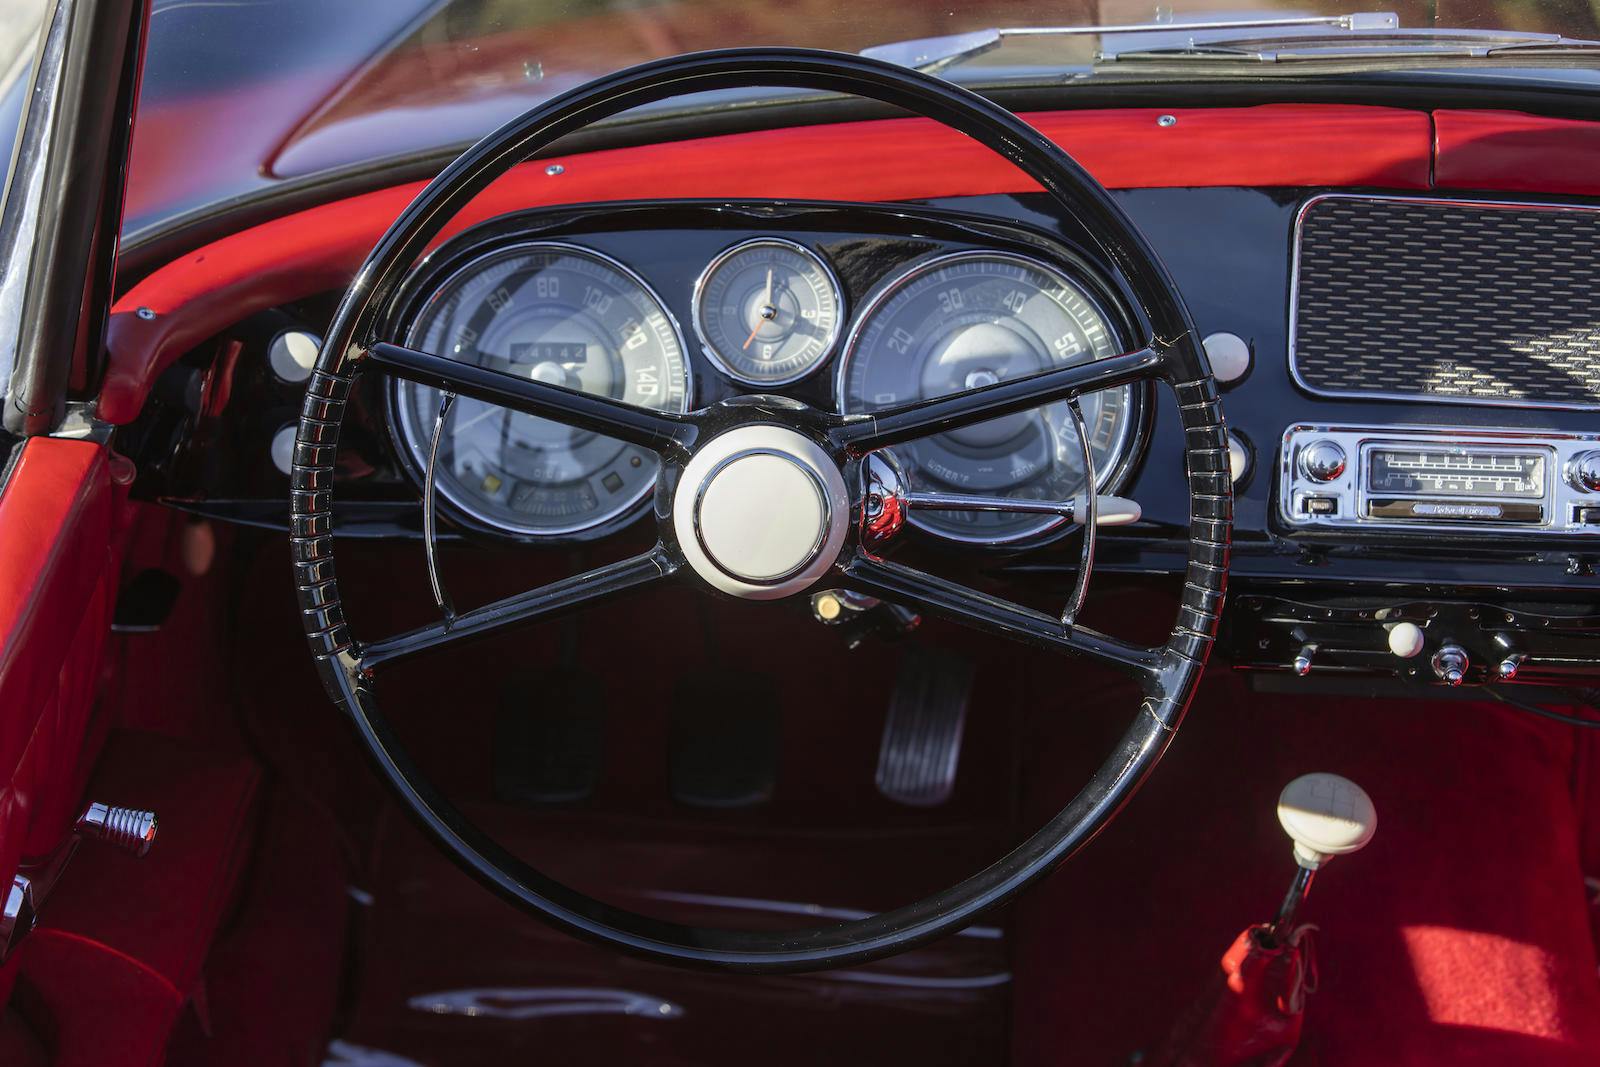 BMW 507 Series II Roadster interior steering wheel